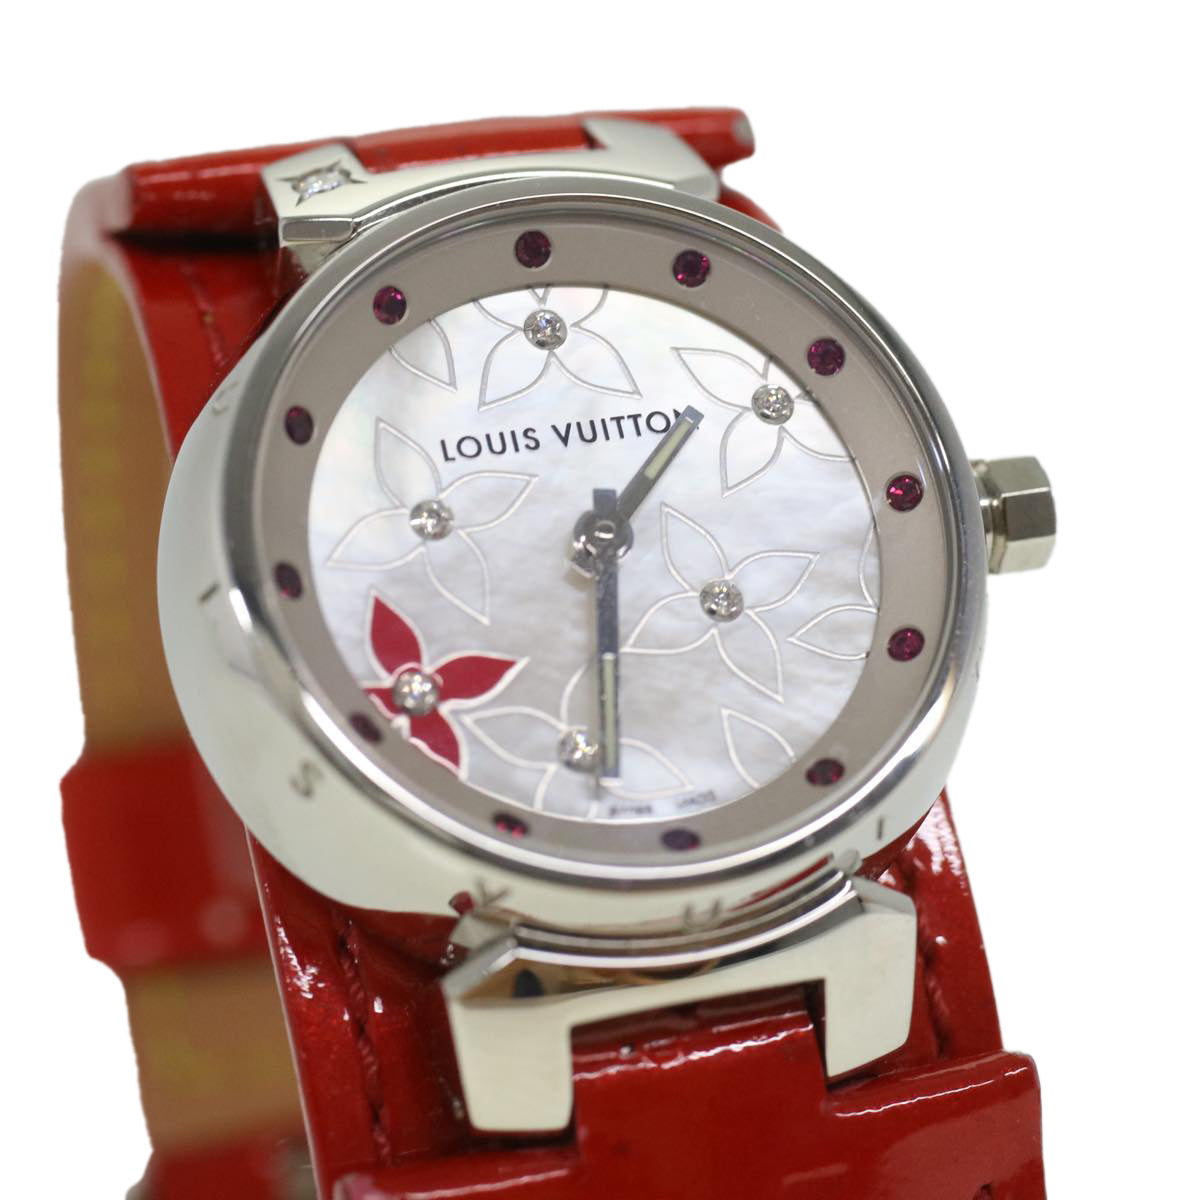 LOUIS VUITTON Monogram Vernis tumbler Watches Red Q1211 LV Auth 34018